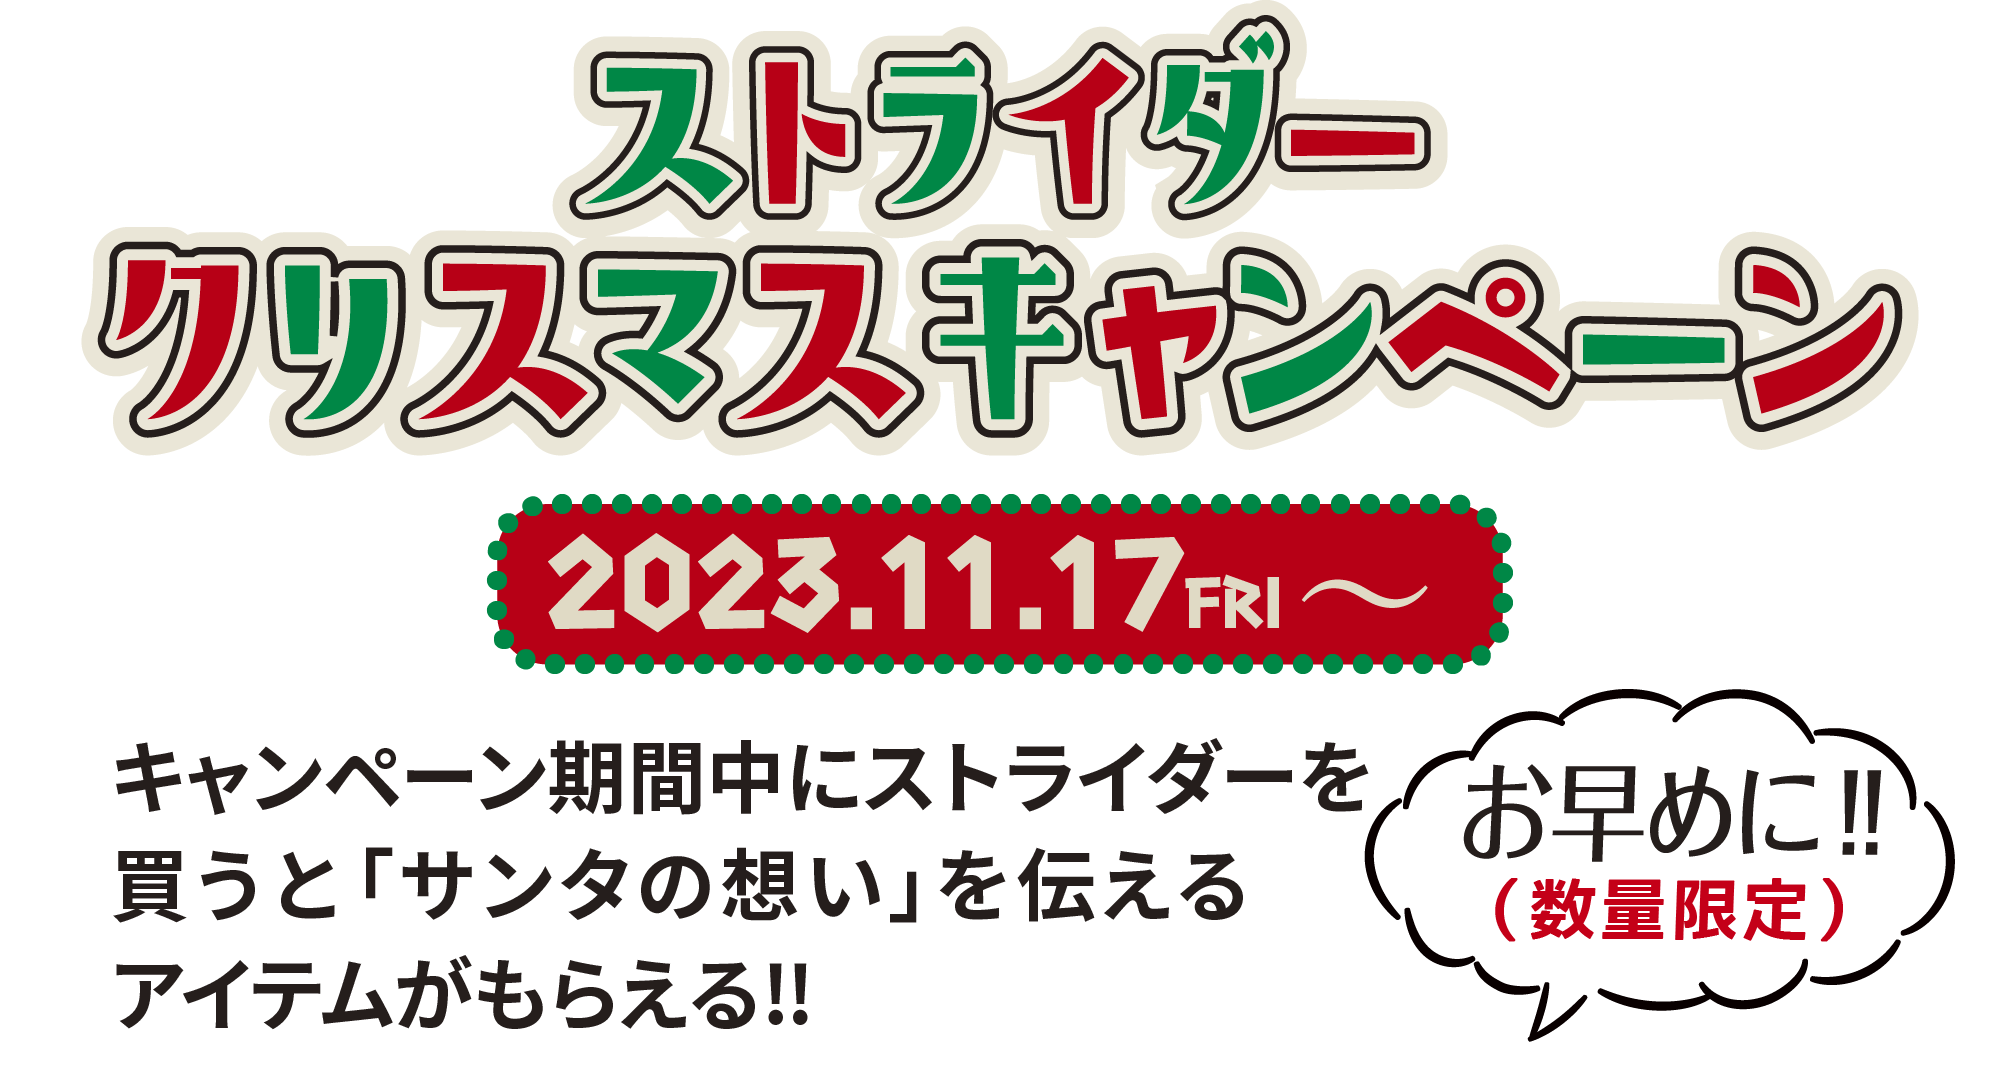 ストライダークリスマスキャンペーン 2023.11.17FRI〜 キャンペーン期間中にストライダーを買うと「サンタの想い」を伝えるアイテムがもらえる!! お早めに（数量限定）